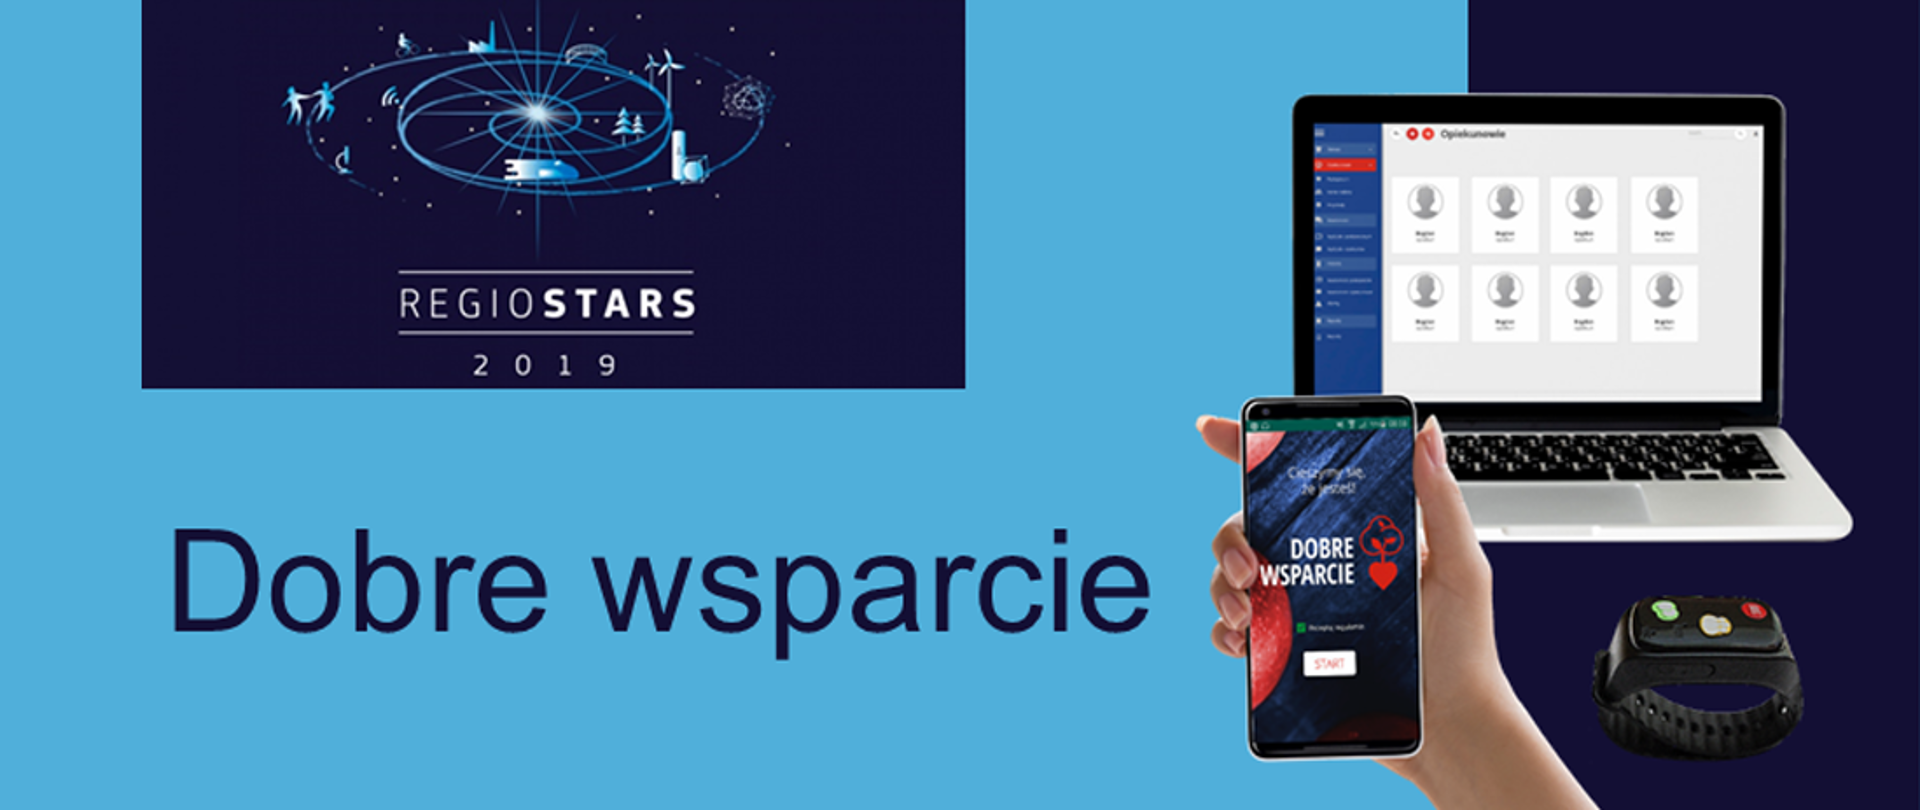 Na grafice napis "Dobre wsparcie" oraz logotyp konkursu Regio Stars Awards 2019. Obok zdjęcie laptopa i i ręki trzymającej telefon.